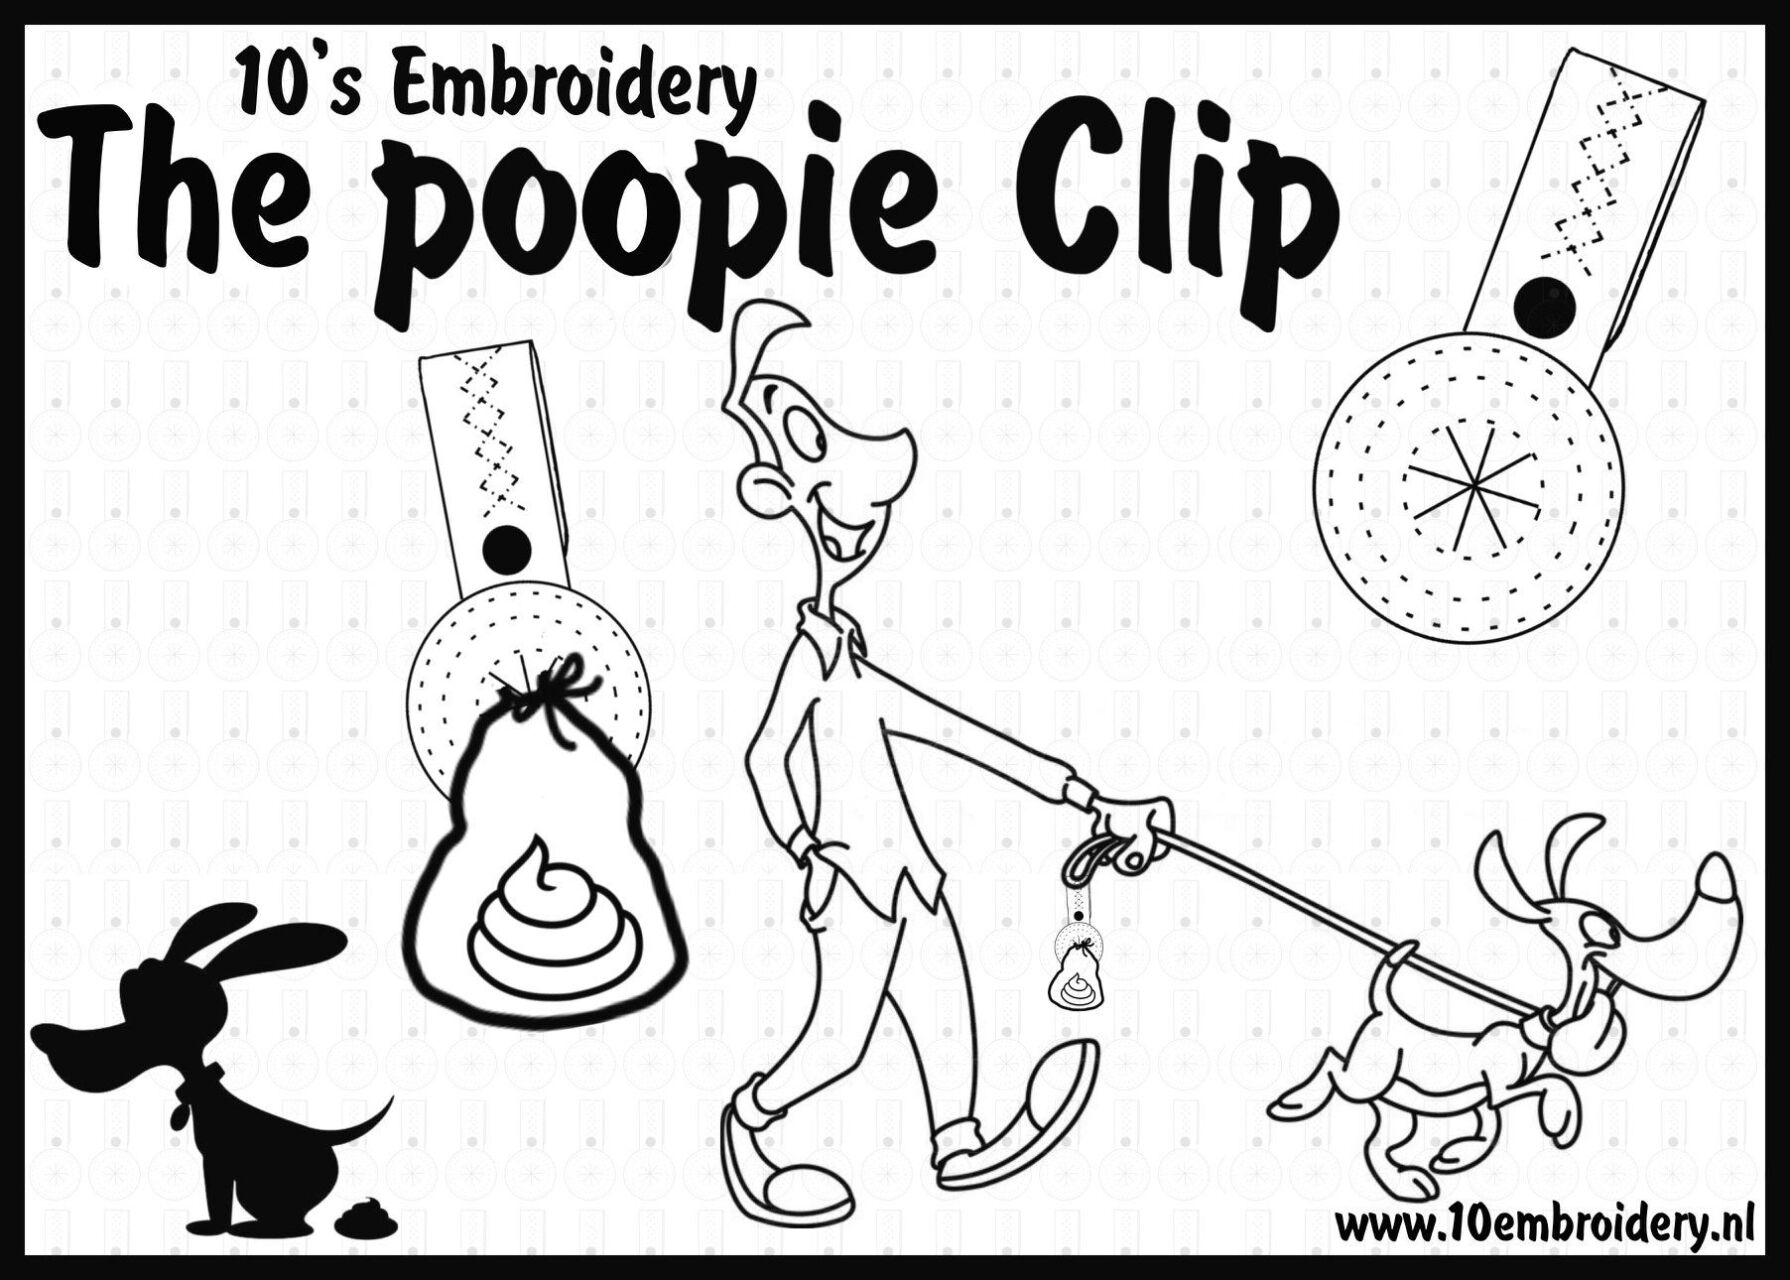 Project Poopie Clip 6 Hart